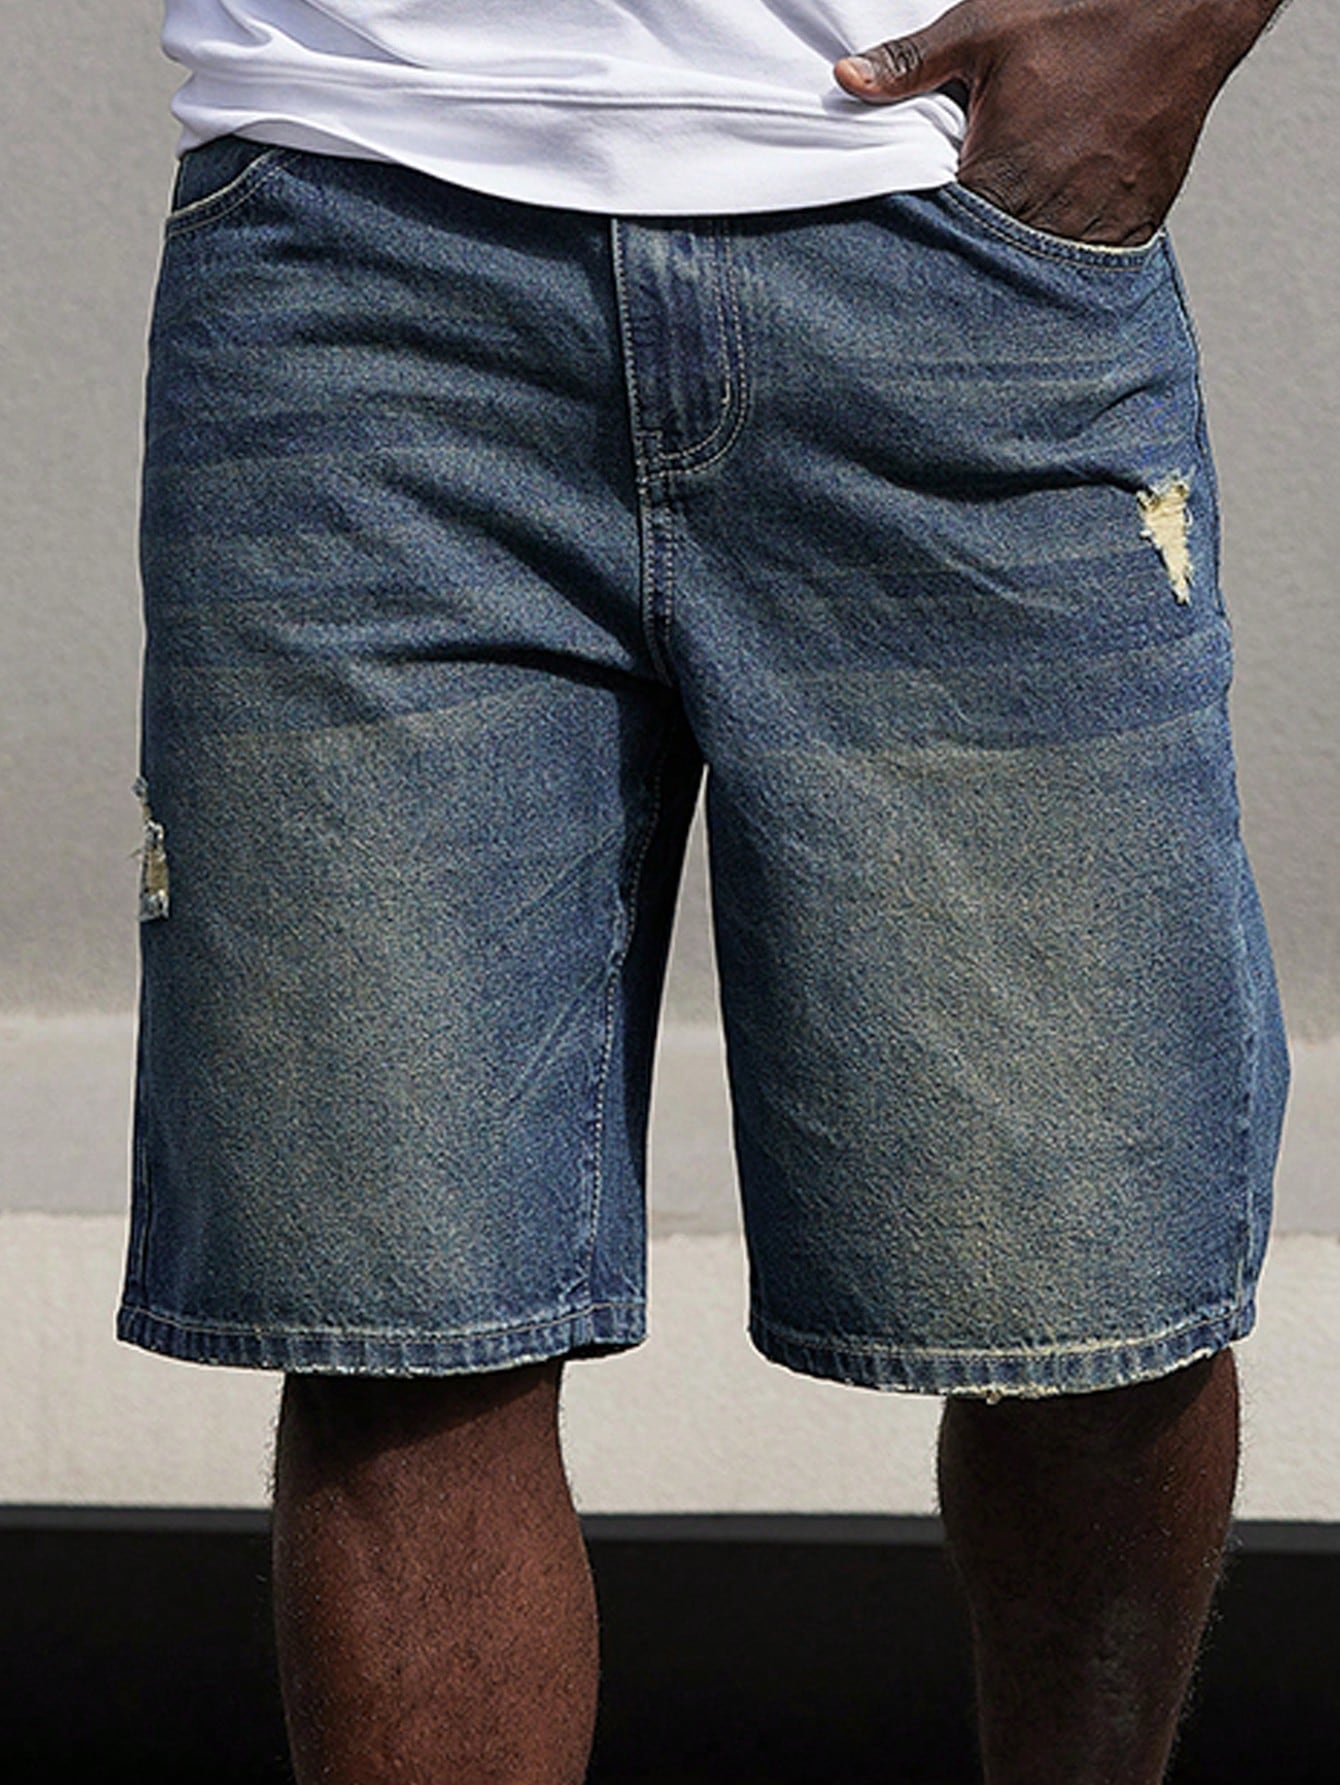 цена Мужские джинсовые шорты с рваными краями Manfinity EMRG больших размеров, синий